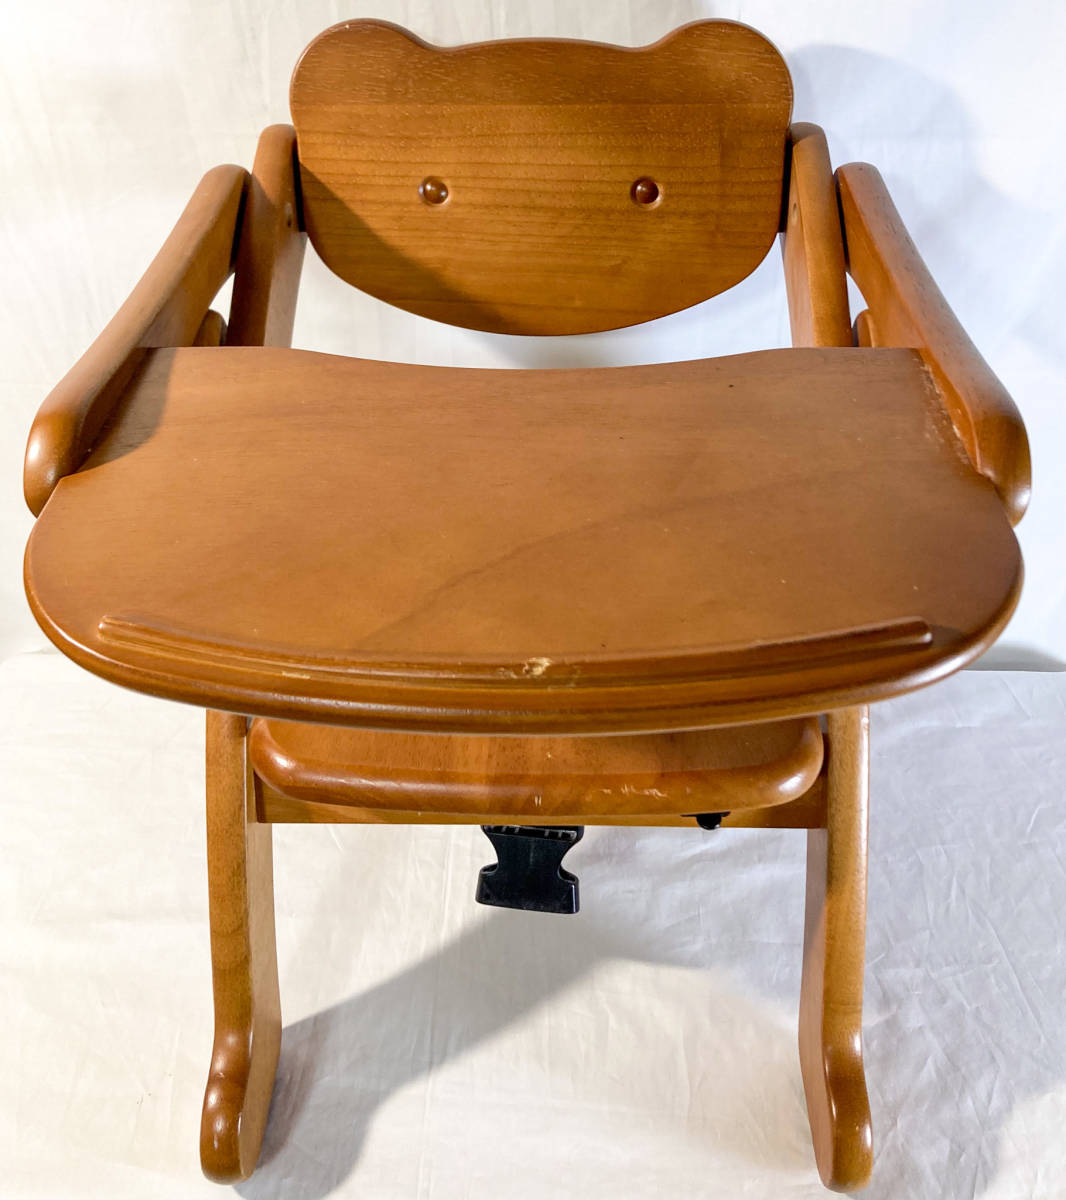 ベビーシェア yamatoya 大和屋 aruku アルク 木製 ローチェア くまさん 椅子 赤ちゃん 子供 【1109.2】_画像2